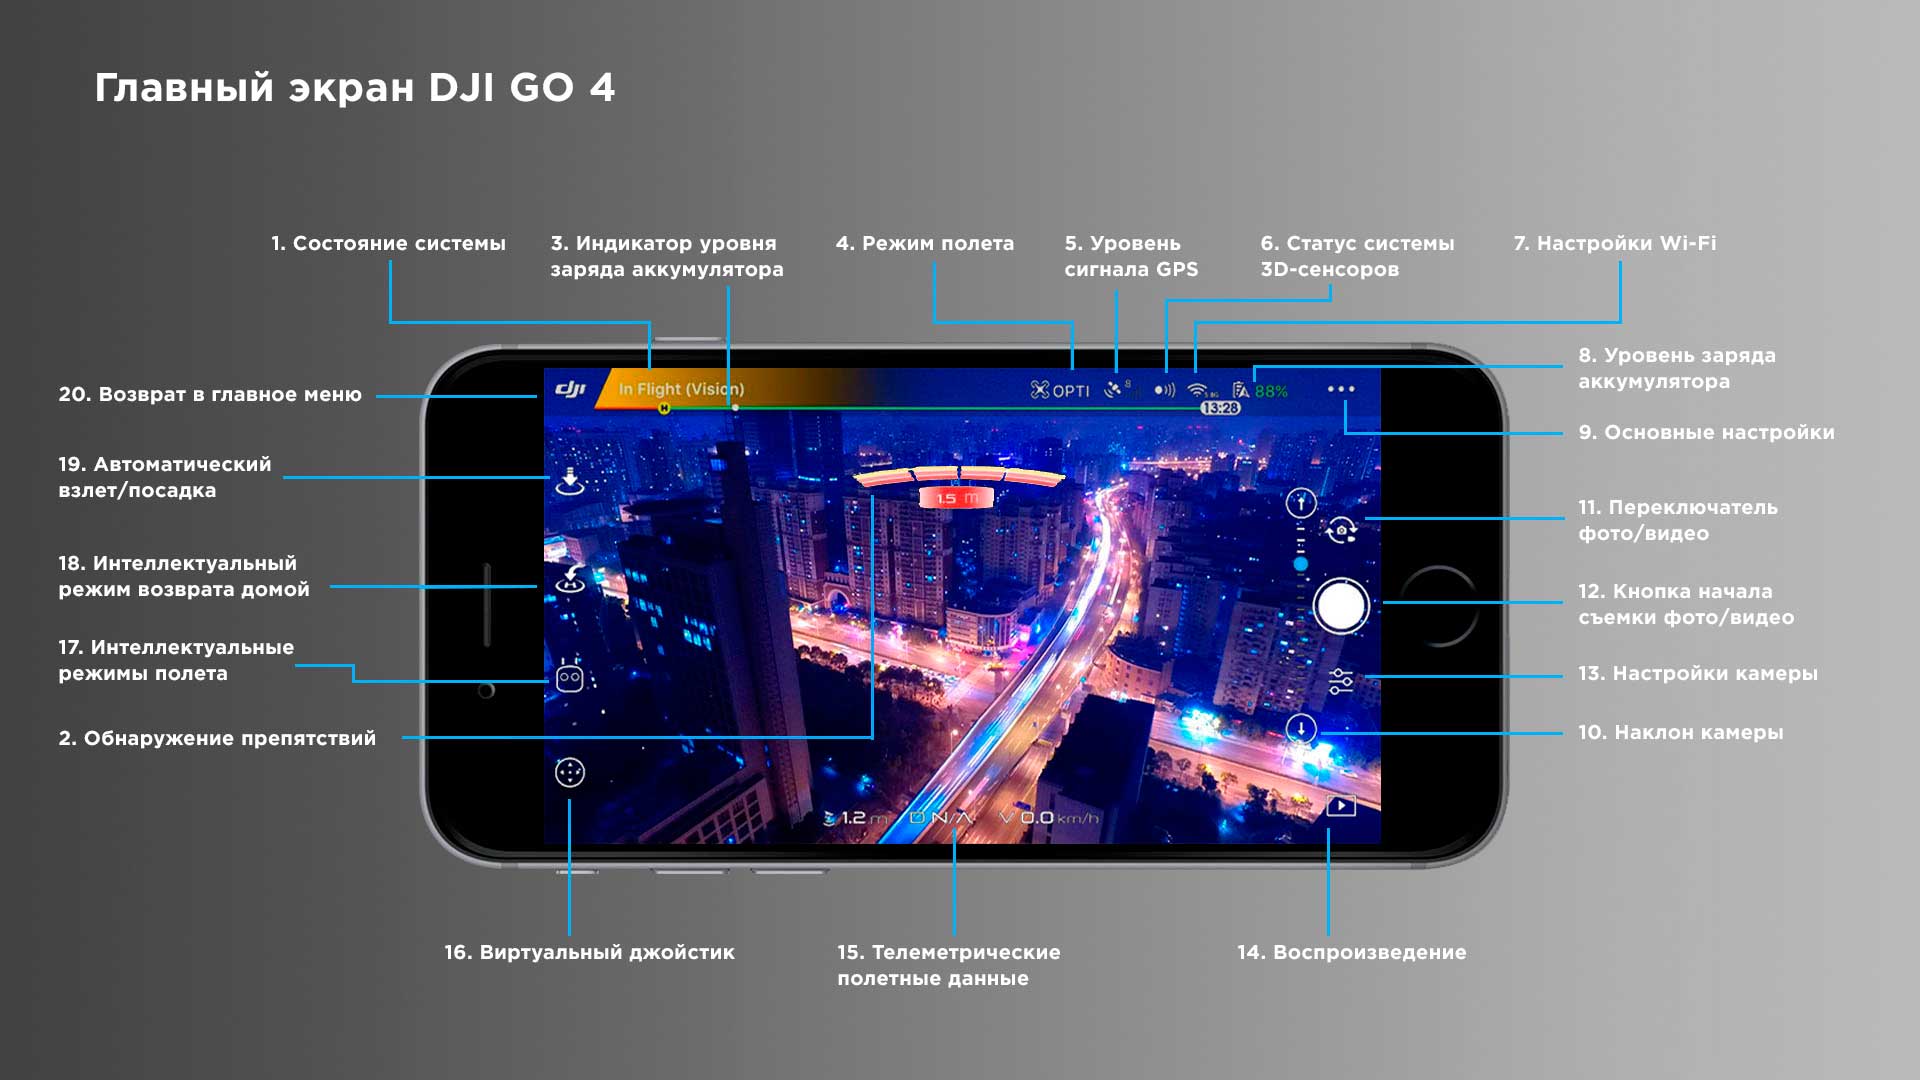 DJI GO 4 - обзор приложения на русском языке